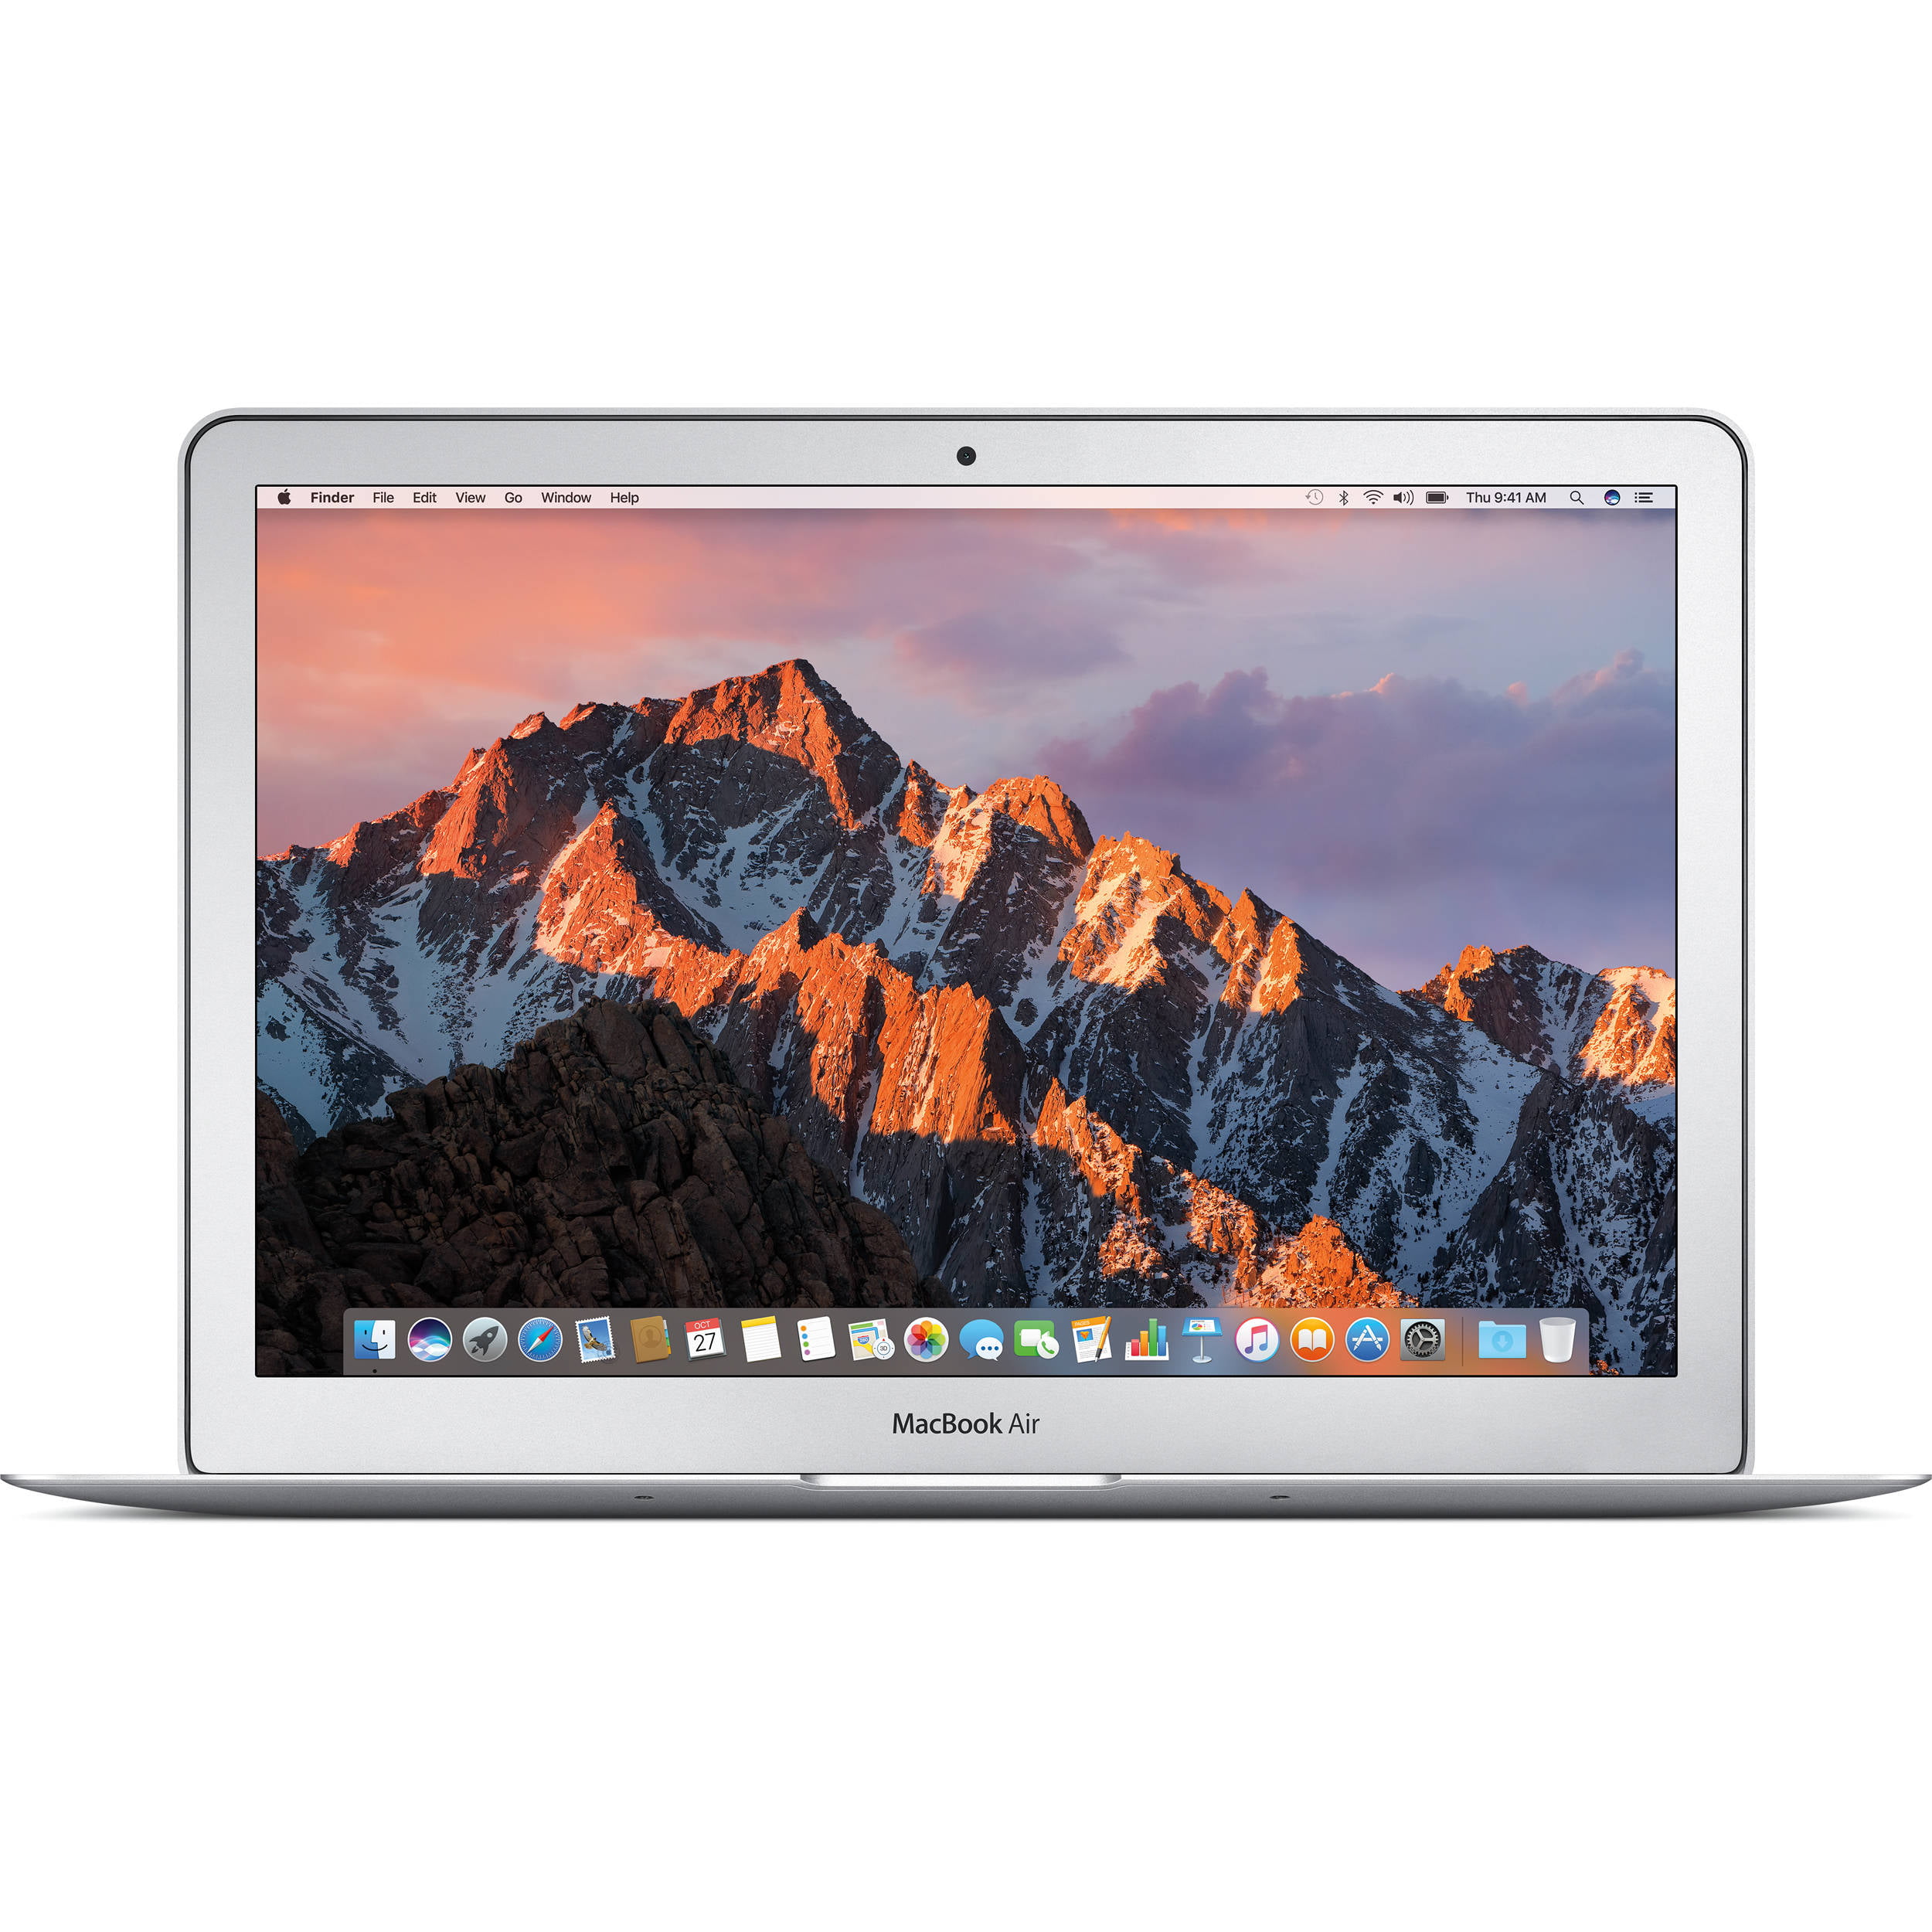 Apple MacBook Air 13 Inch 256GB (2017, Silver) (MQD42LLA) with